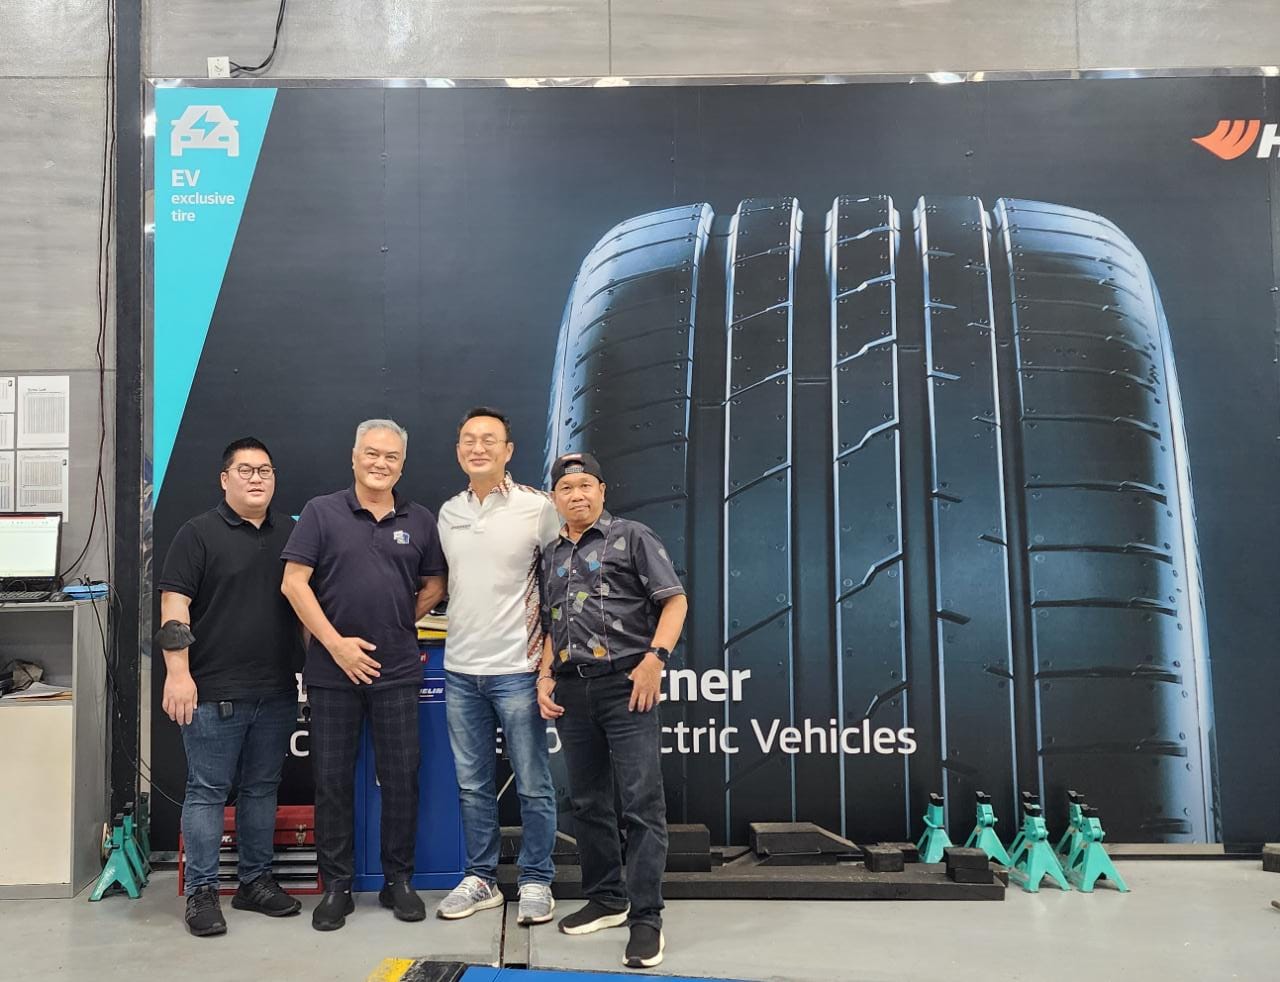 Hankook Tire memulai memasarkan lineup ban Electric Vehicle (EV) di Indonesia dengan Permaisuri sebagai salah satu distributor pertama.